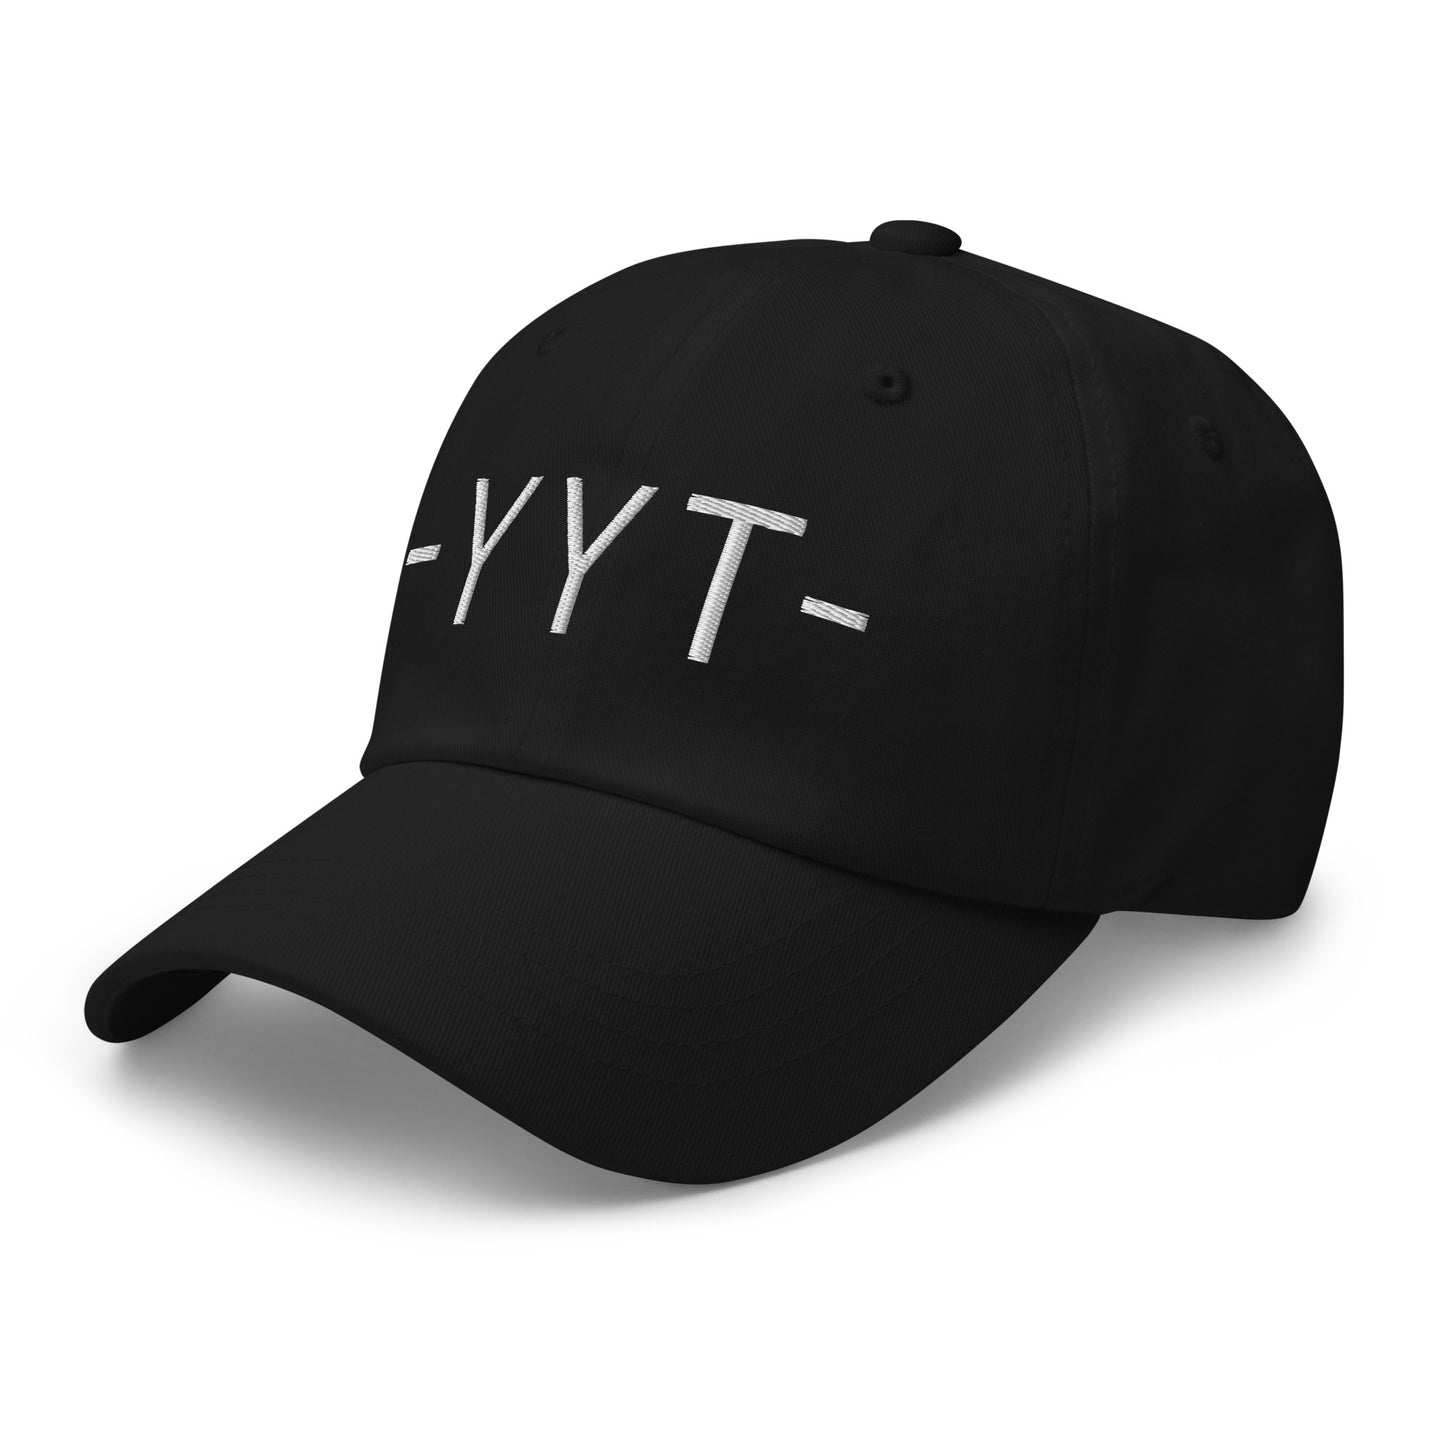 Souvenir Baseball Cap - White • YYT St. John's • YHM Designs - Image 13